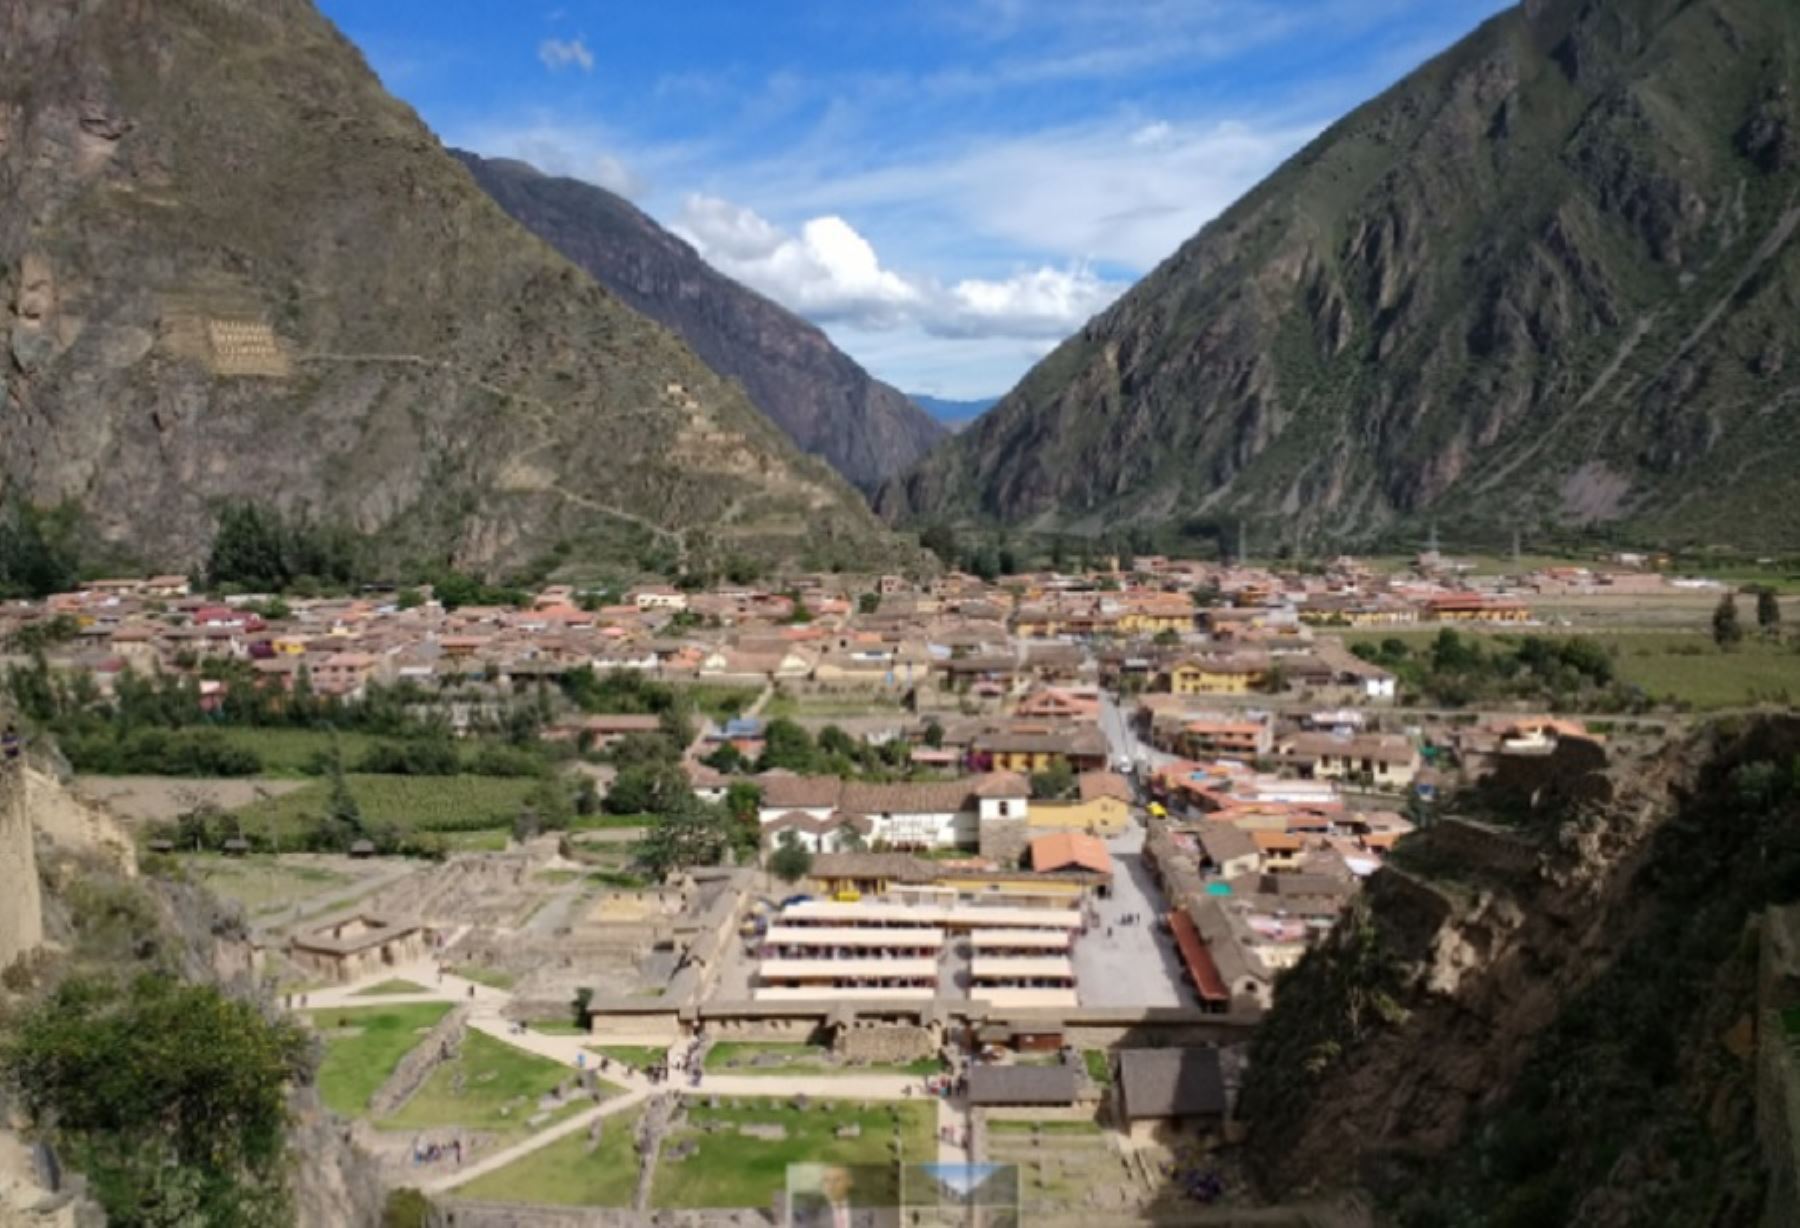 El Parlamento Andino declaró al distrito de Ollantaytambo como "ciudad inca viviente de la región andina", por su reconocido valor arqueológico y patrimonial, así como por conservar todas las costumbres y manifestaciones culturales de la civilización incaica.